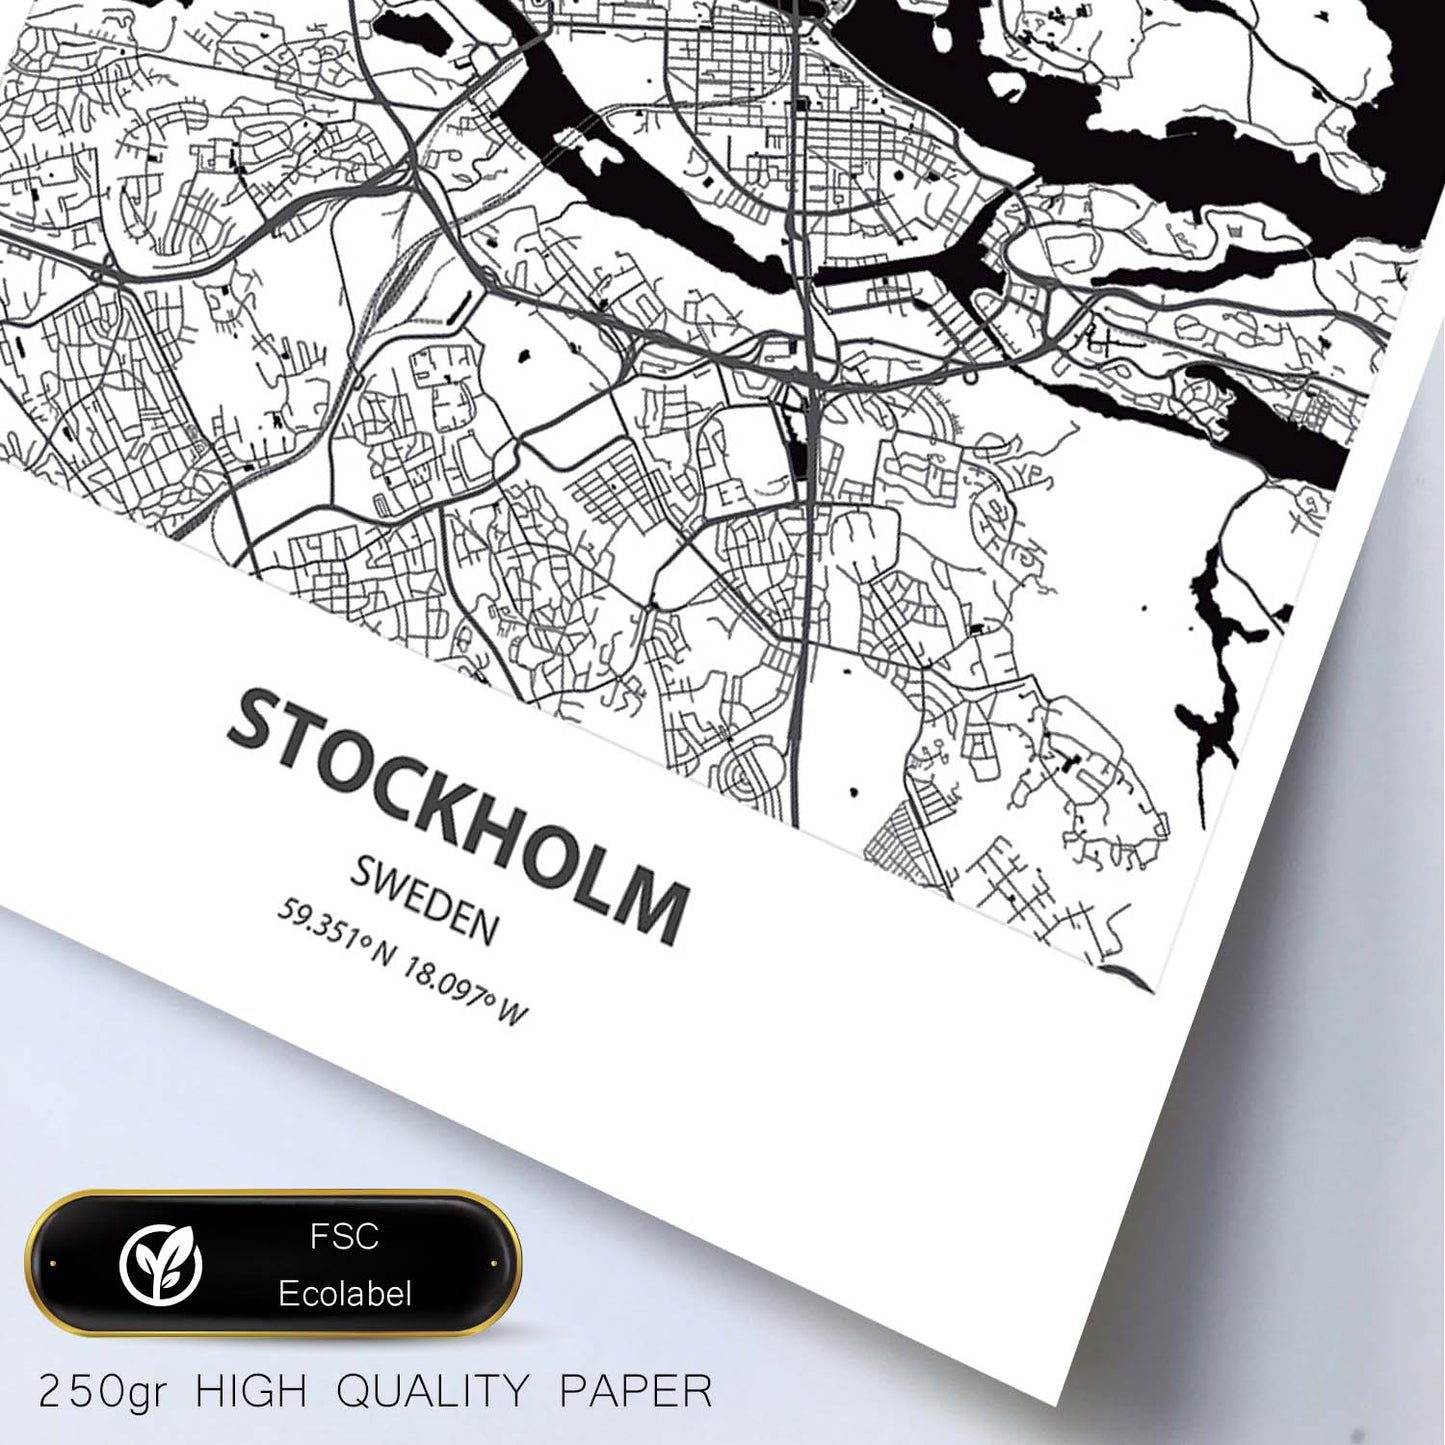 Poster con mapa de Stockholm - Suecia. Láminas de ciudades del norte de Europa con mares y ríos en color negro.-Artwork-Nacnic-Nacnic Estudio SL